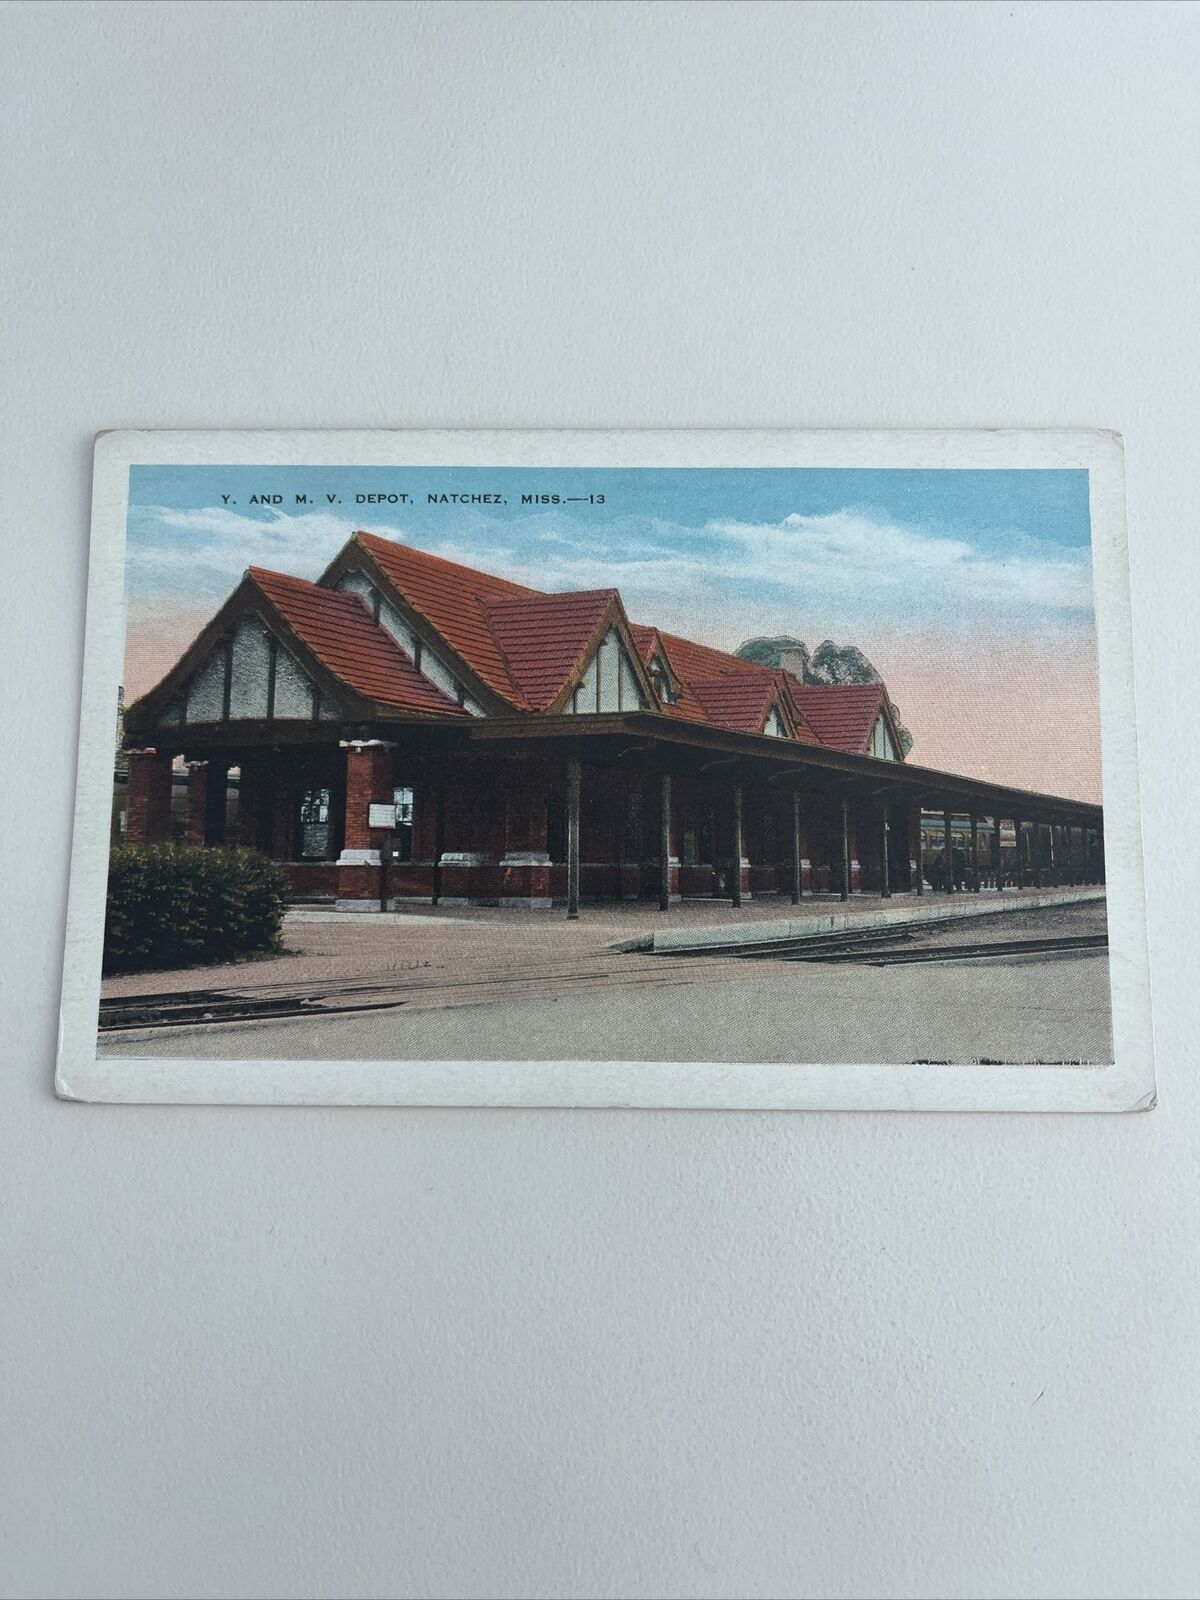 Vintage Postcard--MISSISSIPPI-Natchez-Y. and M. V. Railroad Train Depot Platform